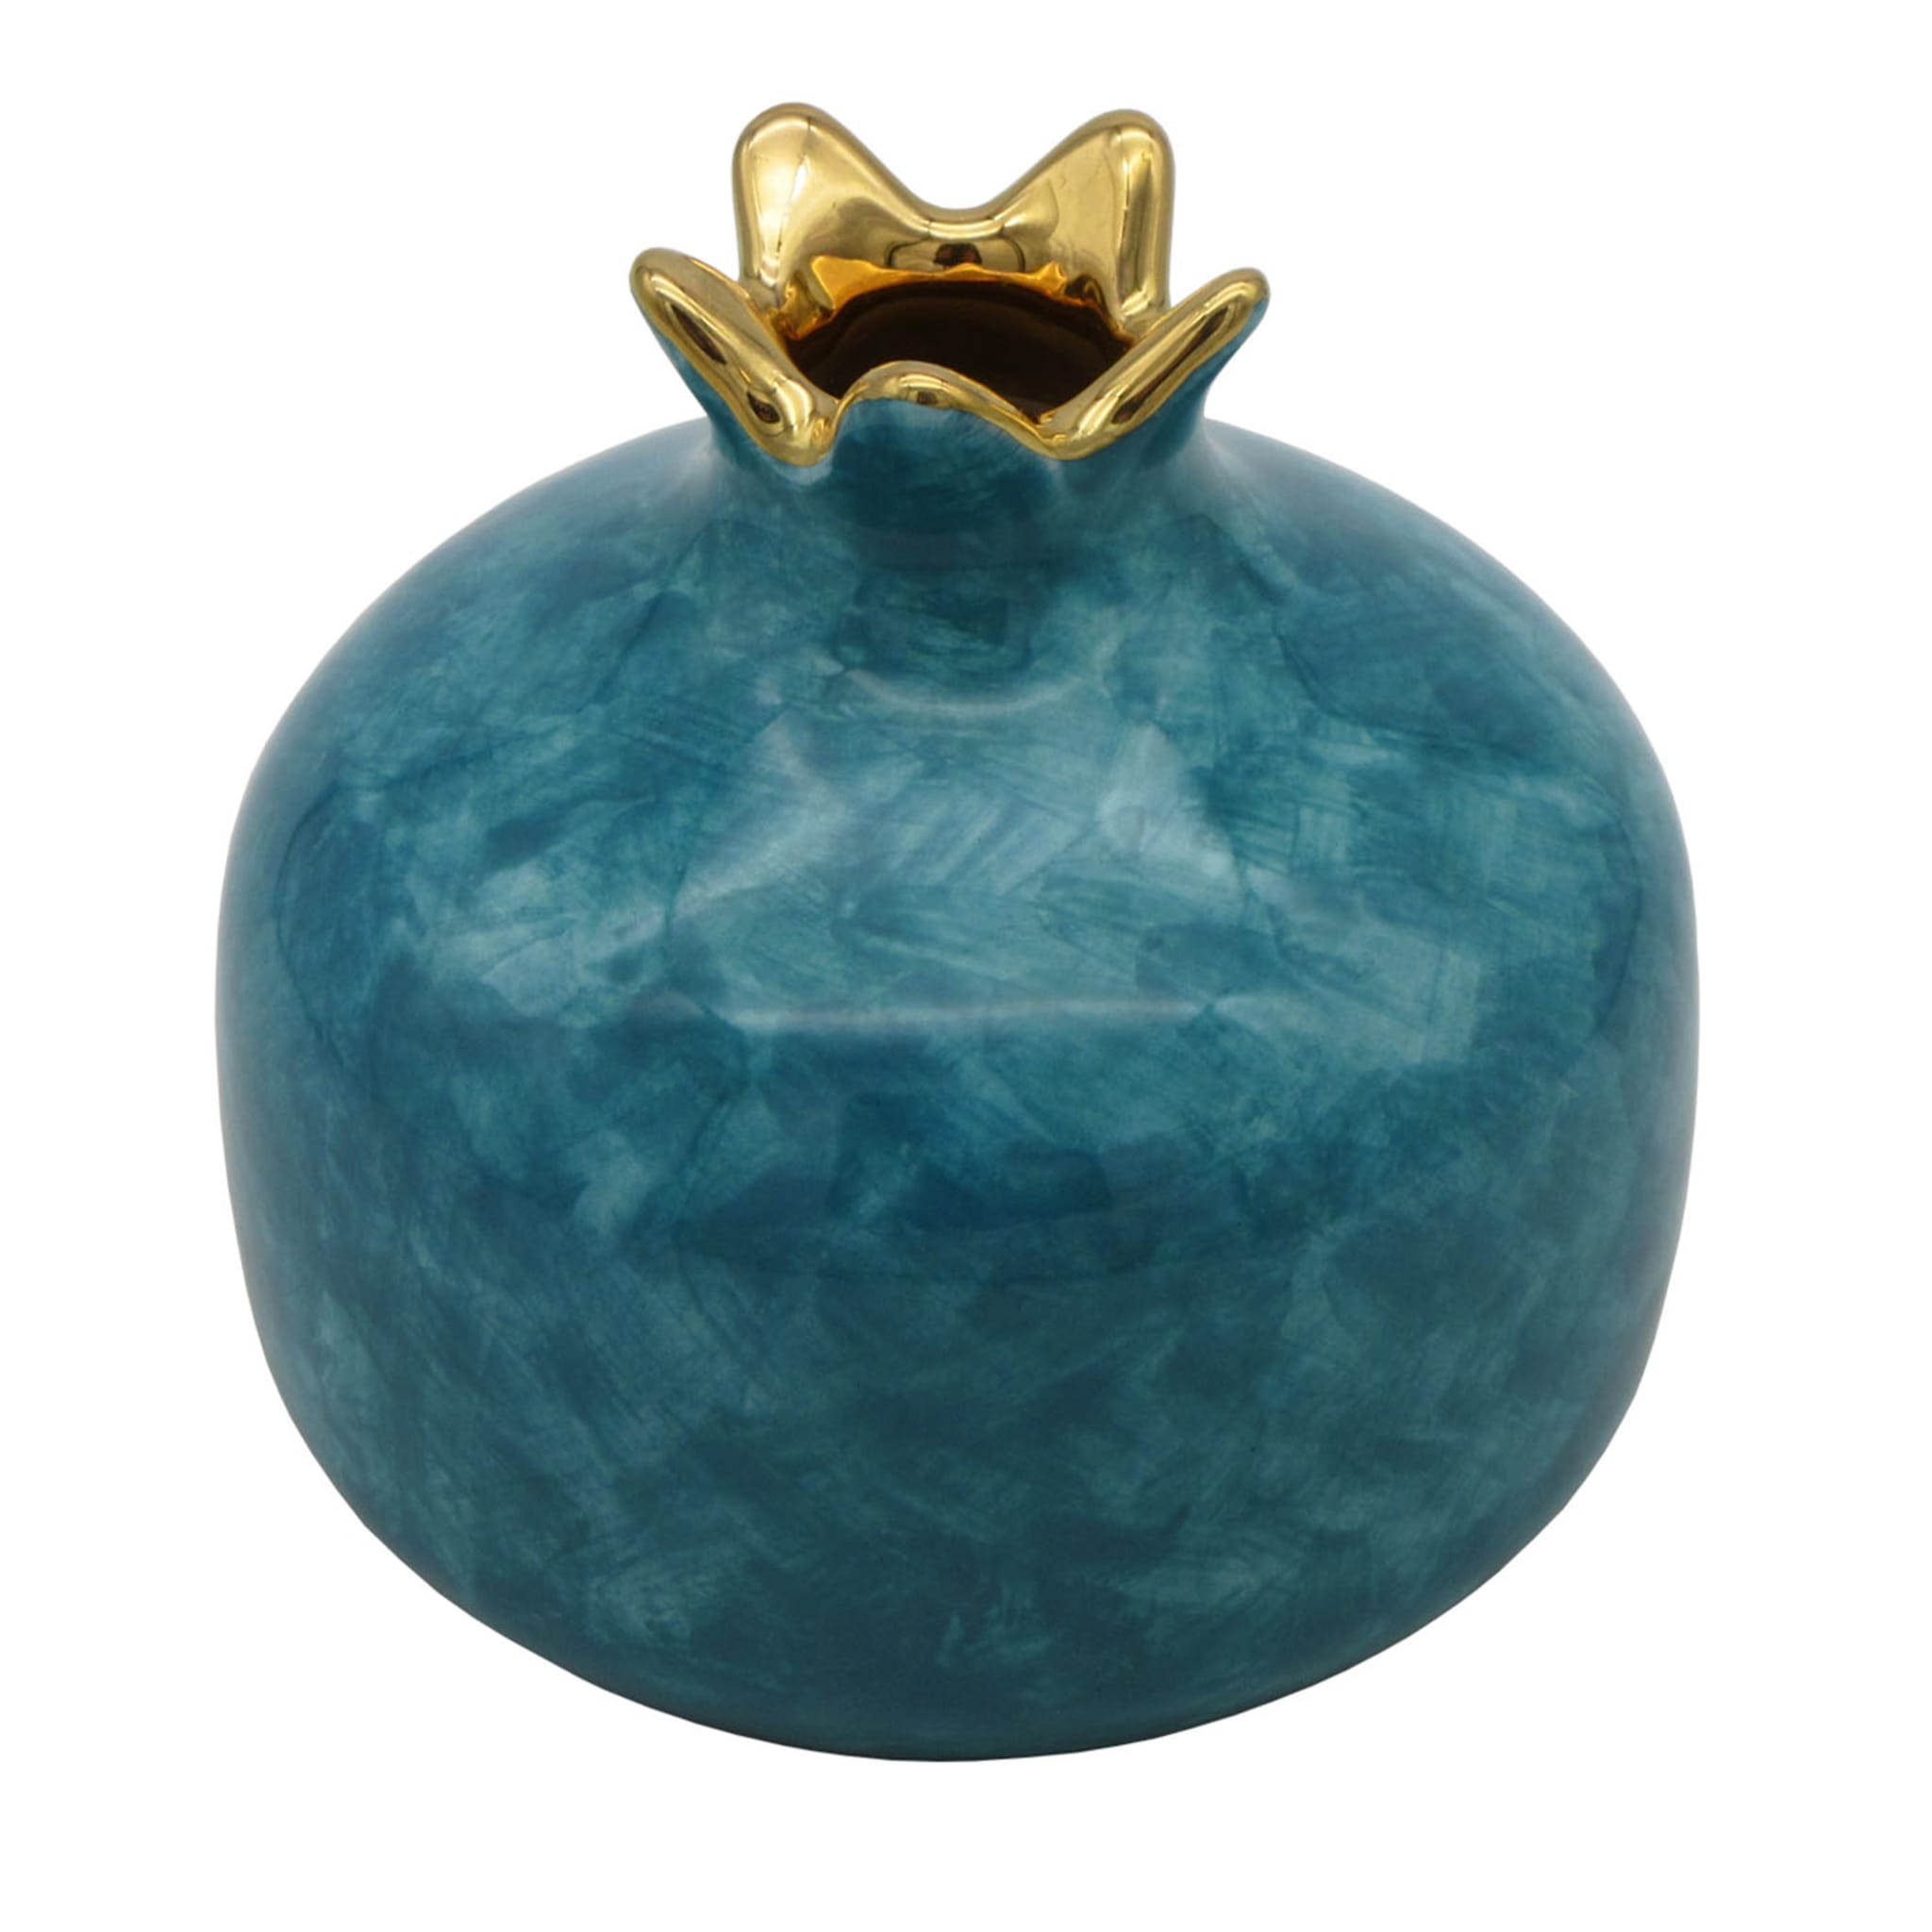 Petite grenade en céramique bleue - Vue principale